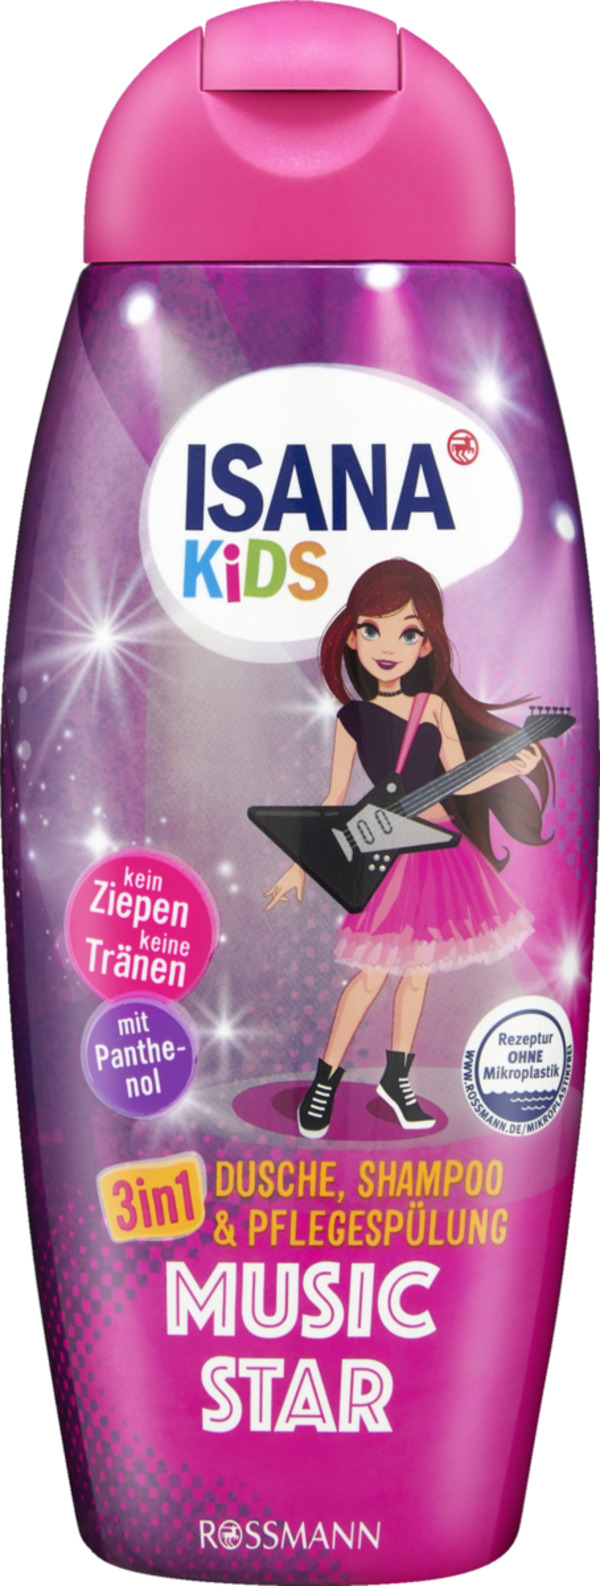 Bild 1 von ISANA Kids 3in1 Dusche, Shampoo & Pflegespülung Foto Star 4.30 EUR/1 l